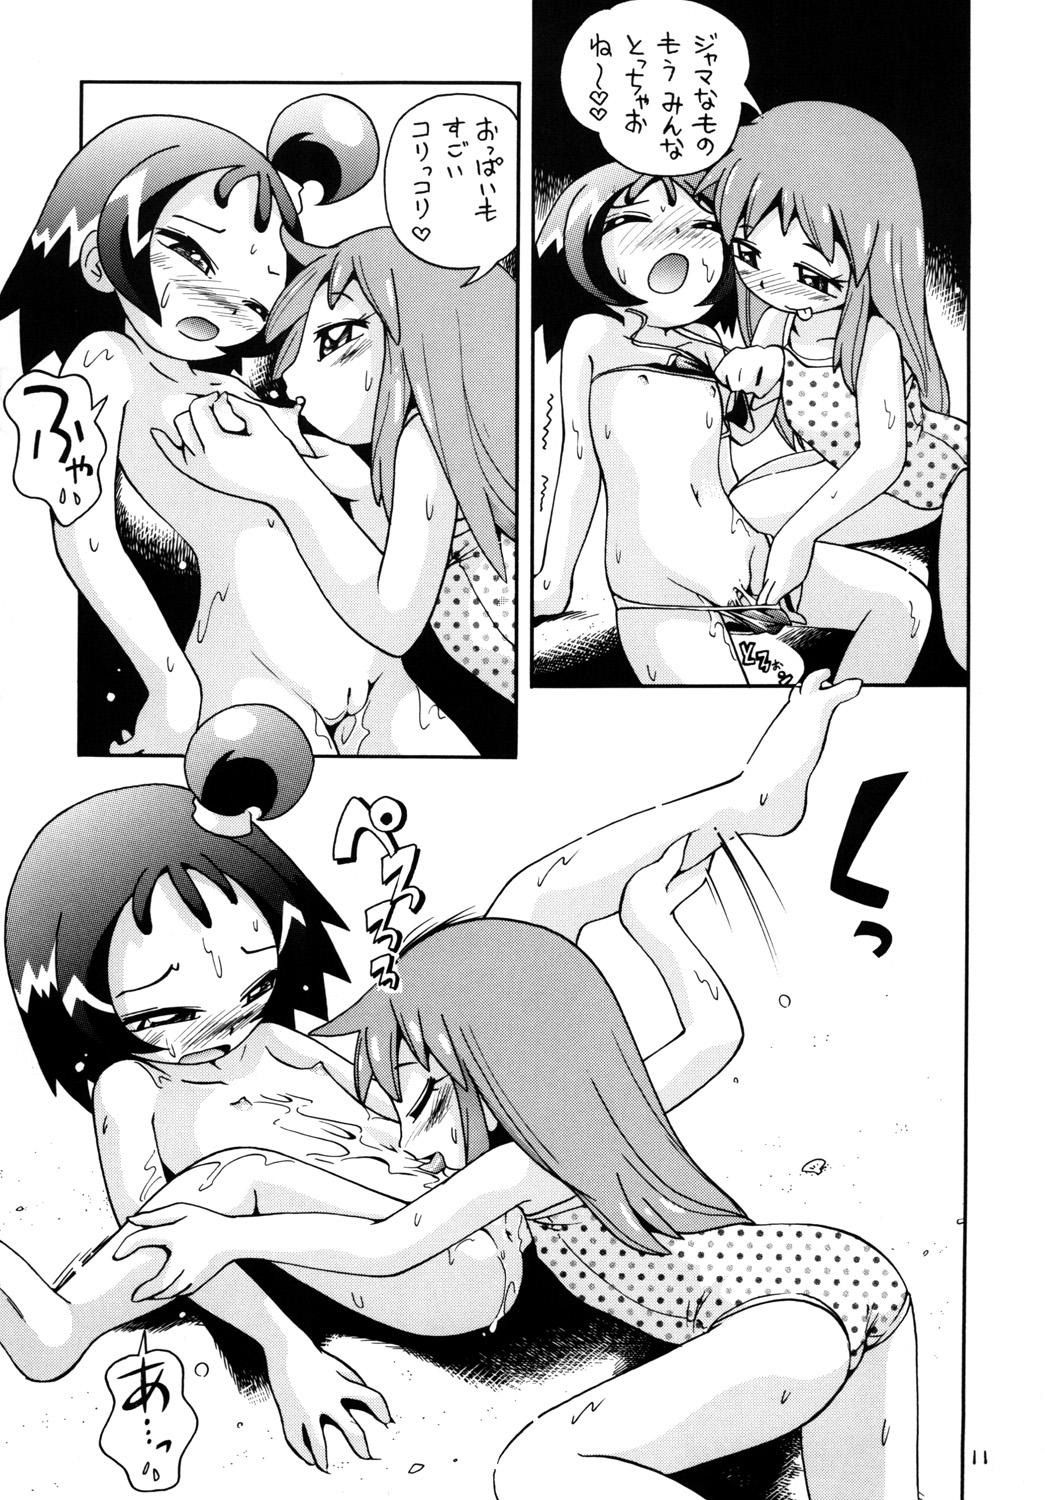 Hot Couple Sex Puchi Pure - Ojamajo doremi Azumanga daioh Doggystyle - Page 10